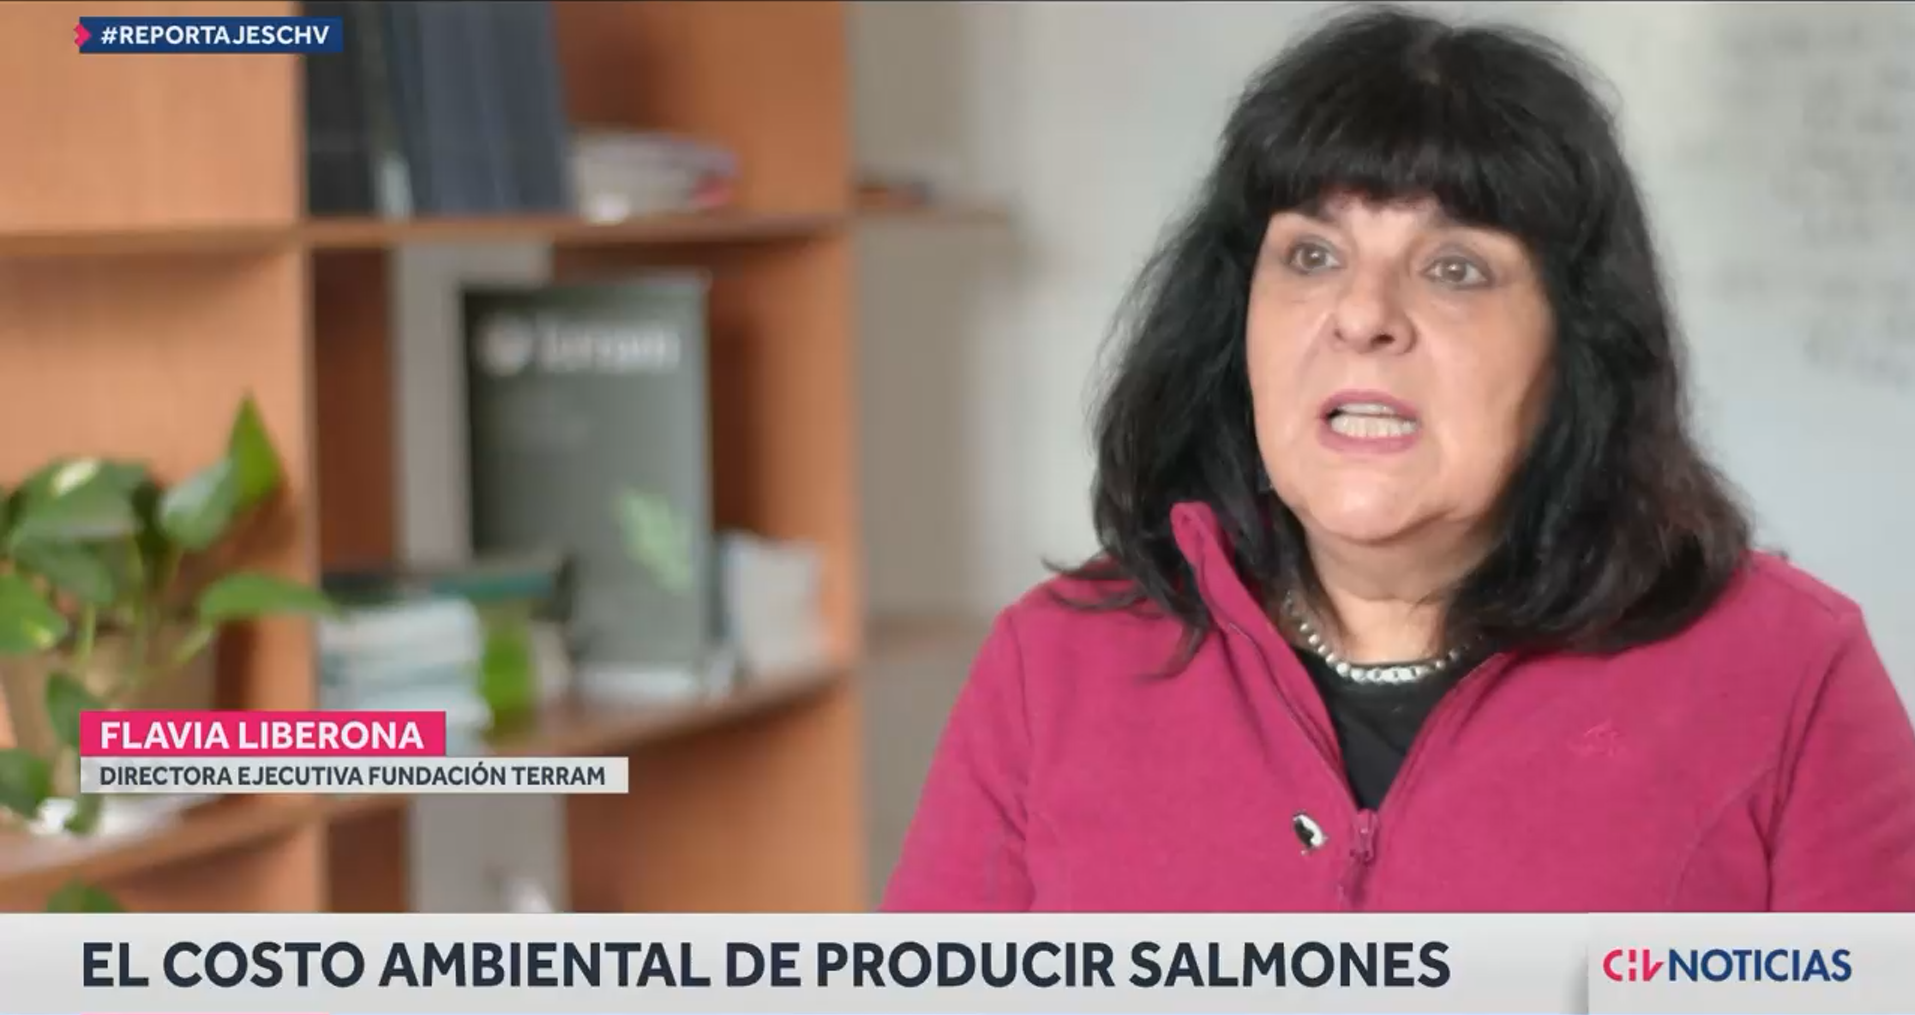 El costo ambiental de producir salmones: Industria vulneraría normas y busca instalarse en áreas protegidas